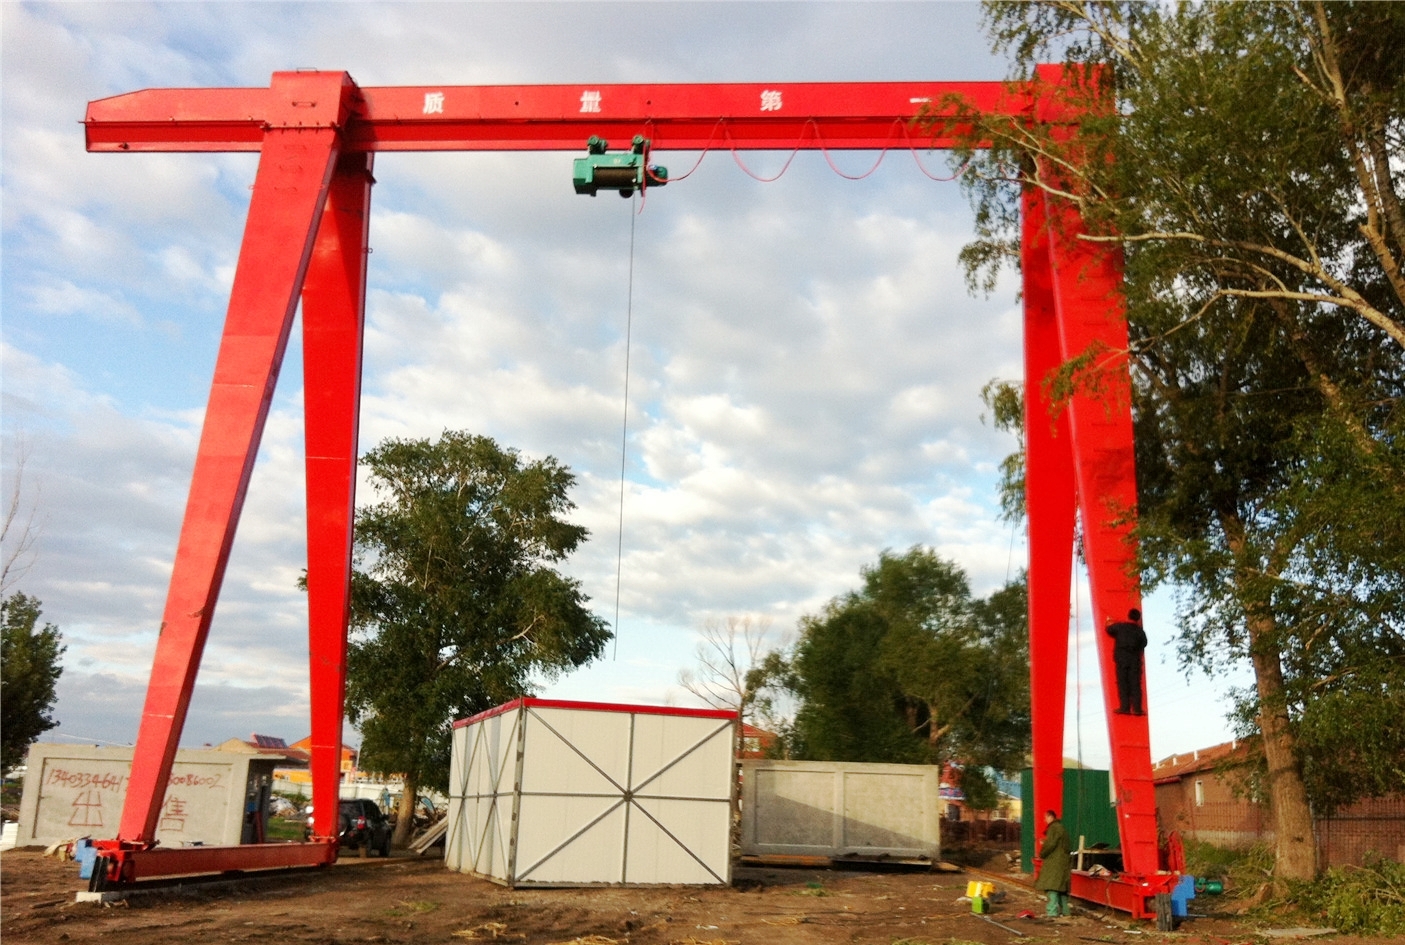 mobile gantry crane